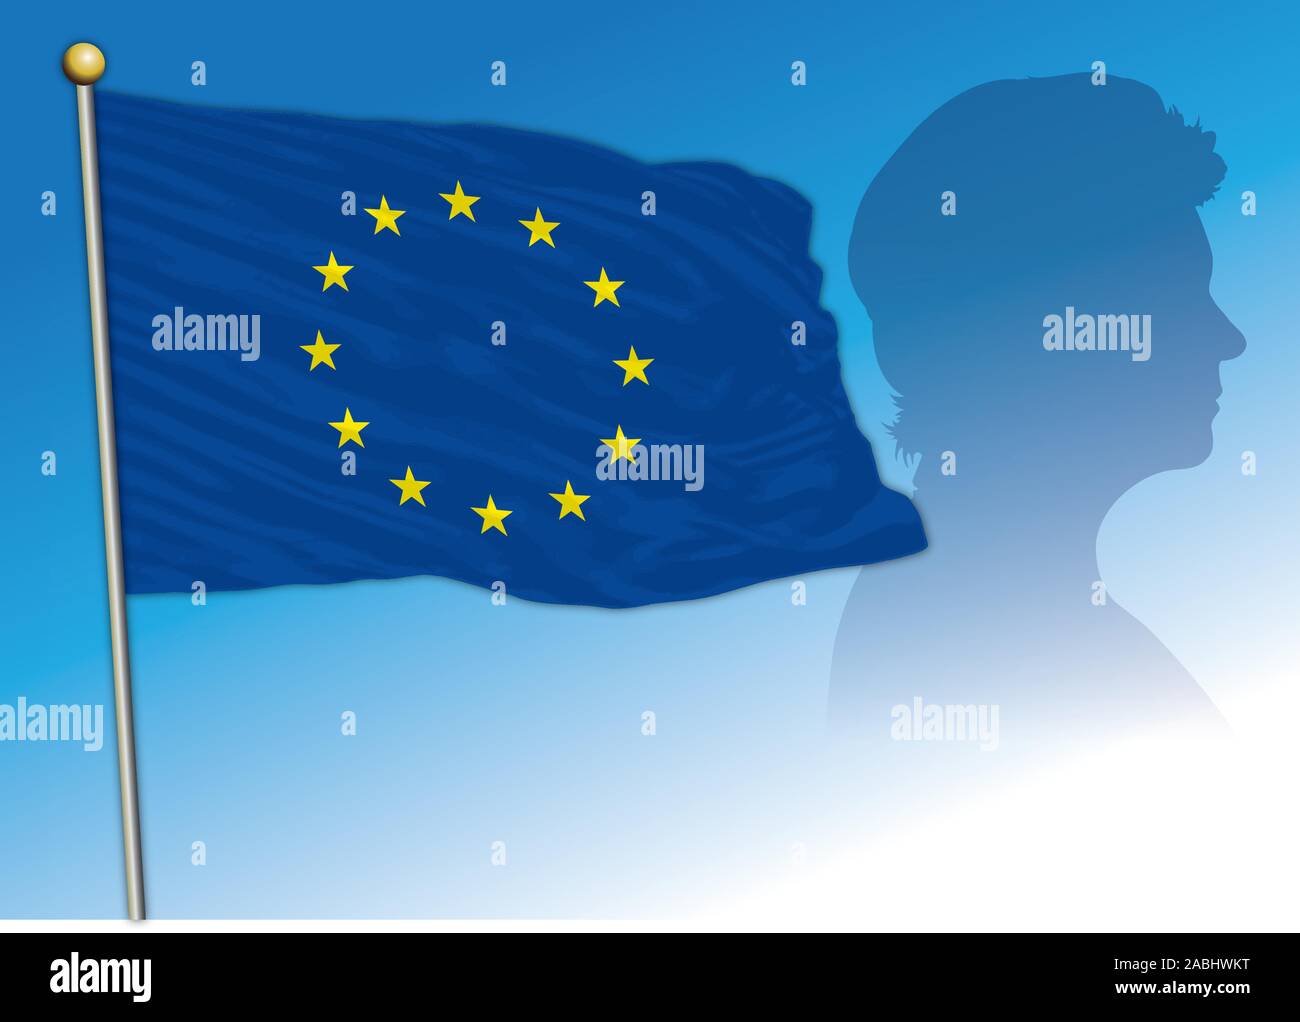 Ursula von der Leyen silhouette avec drapeau de l'UE, nouveau président de la Commission européenne, Allemagne Illustration de Vecteur